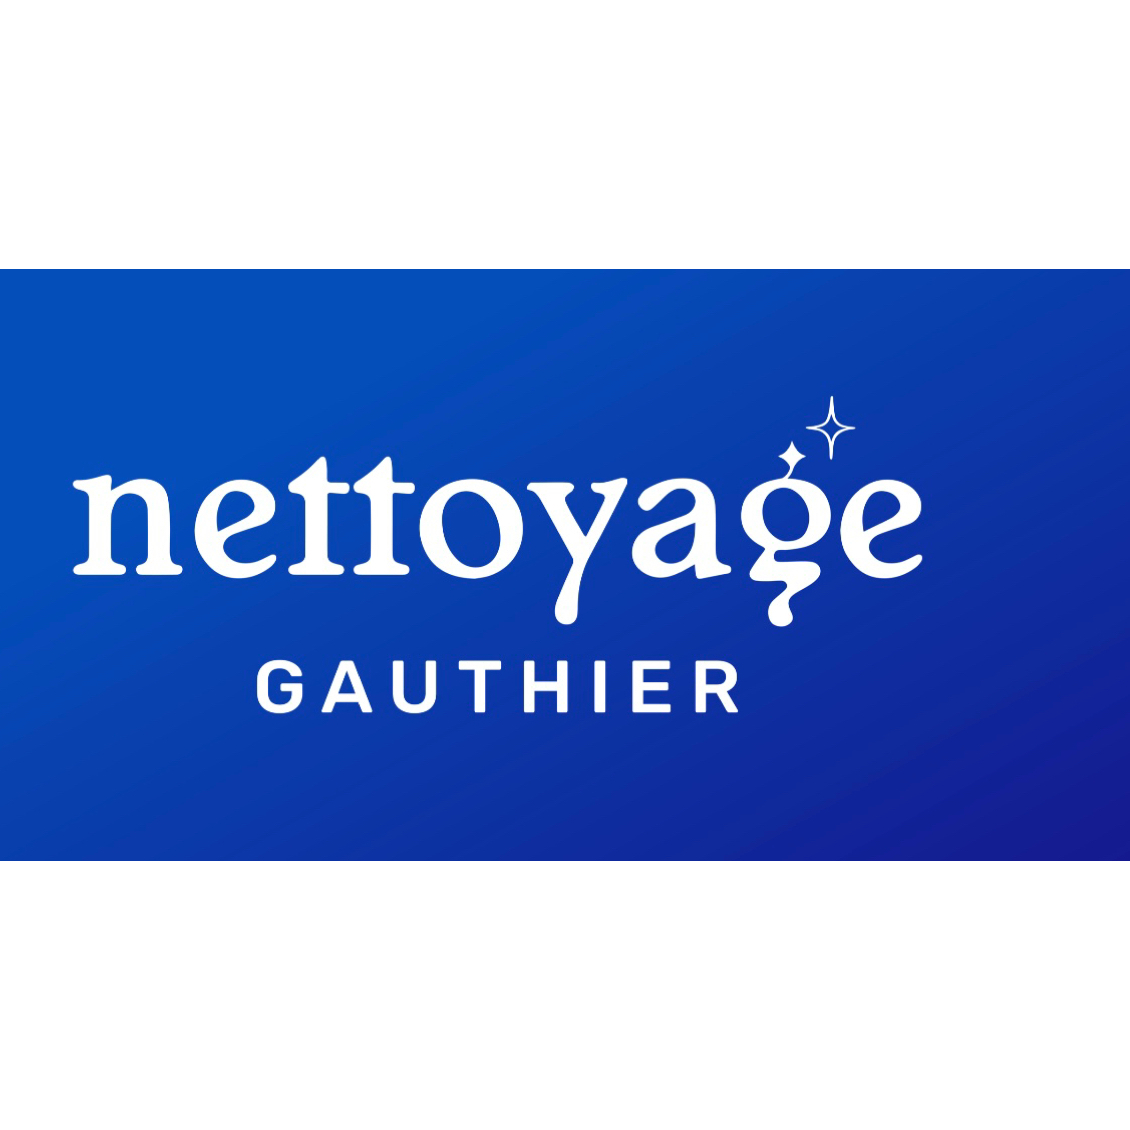 Nettoyage Gauthier Montréal